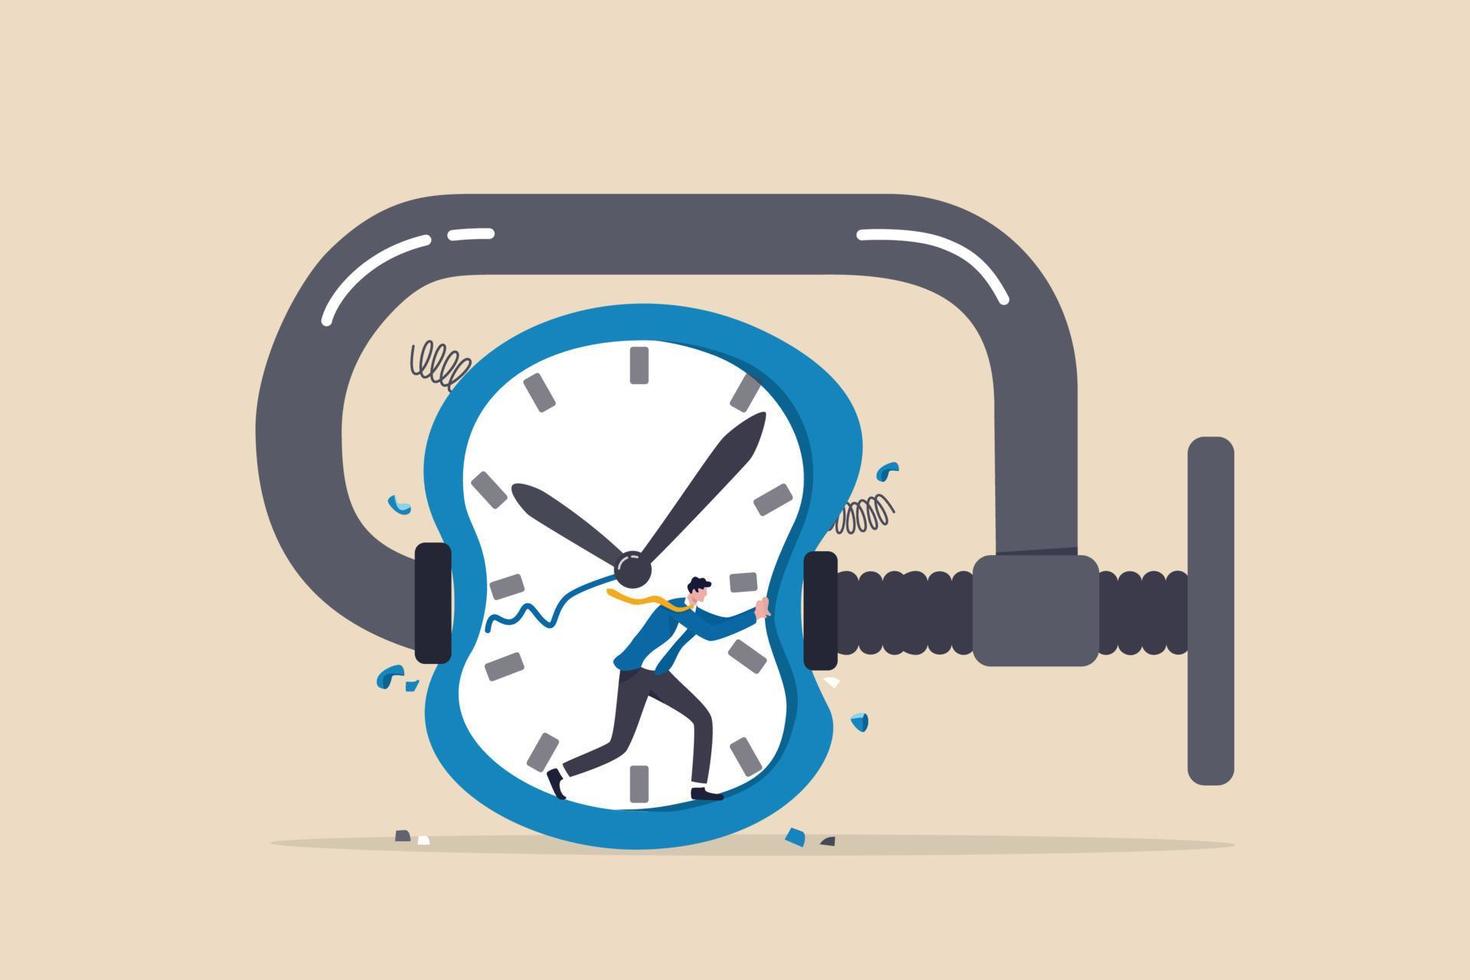 Zeitdruck oder Zeitmangel, Stress oder Angst, die Arbeit innerhalb eines aggressiven Termin- oder Zeitmanagementkonzepts zu beenden, frustrierter Geschäftsmann versucht, die zusammengedrückte Zeitschaltuhr zu stoppen. vektor